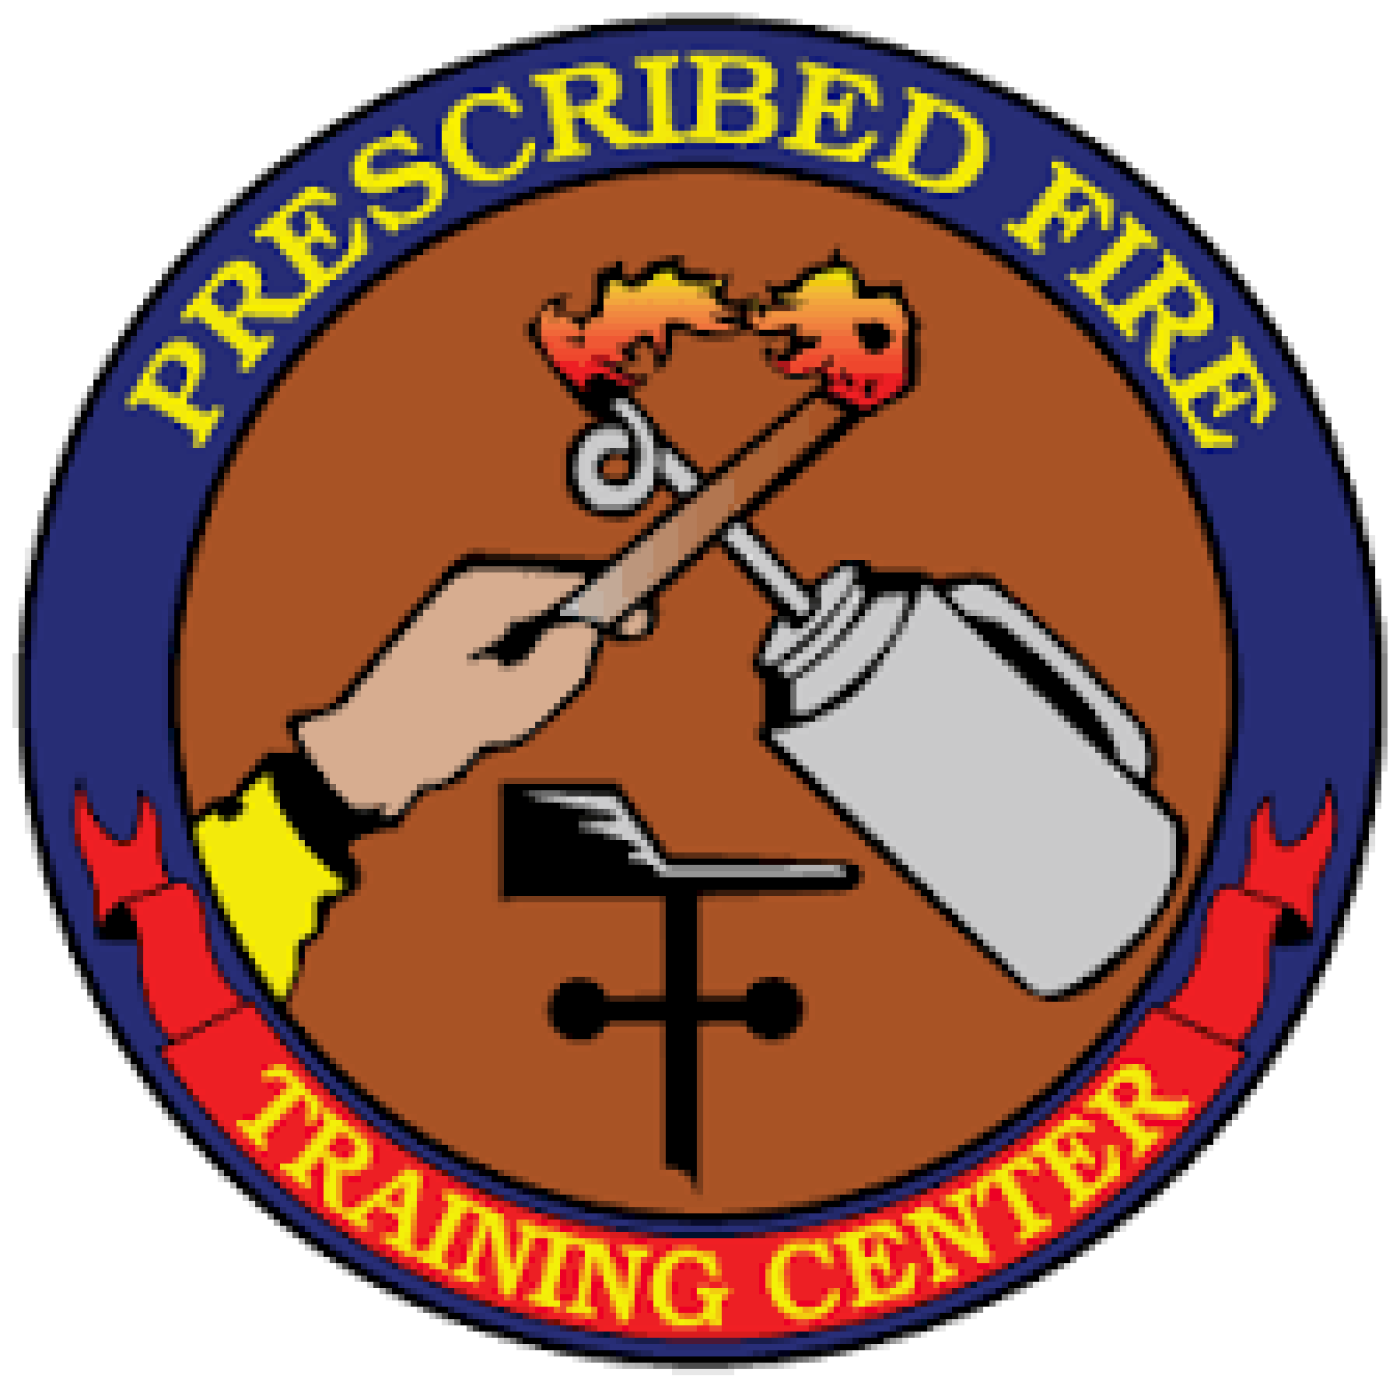 Prescribed Fire Training Center logo